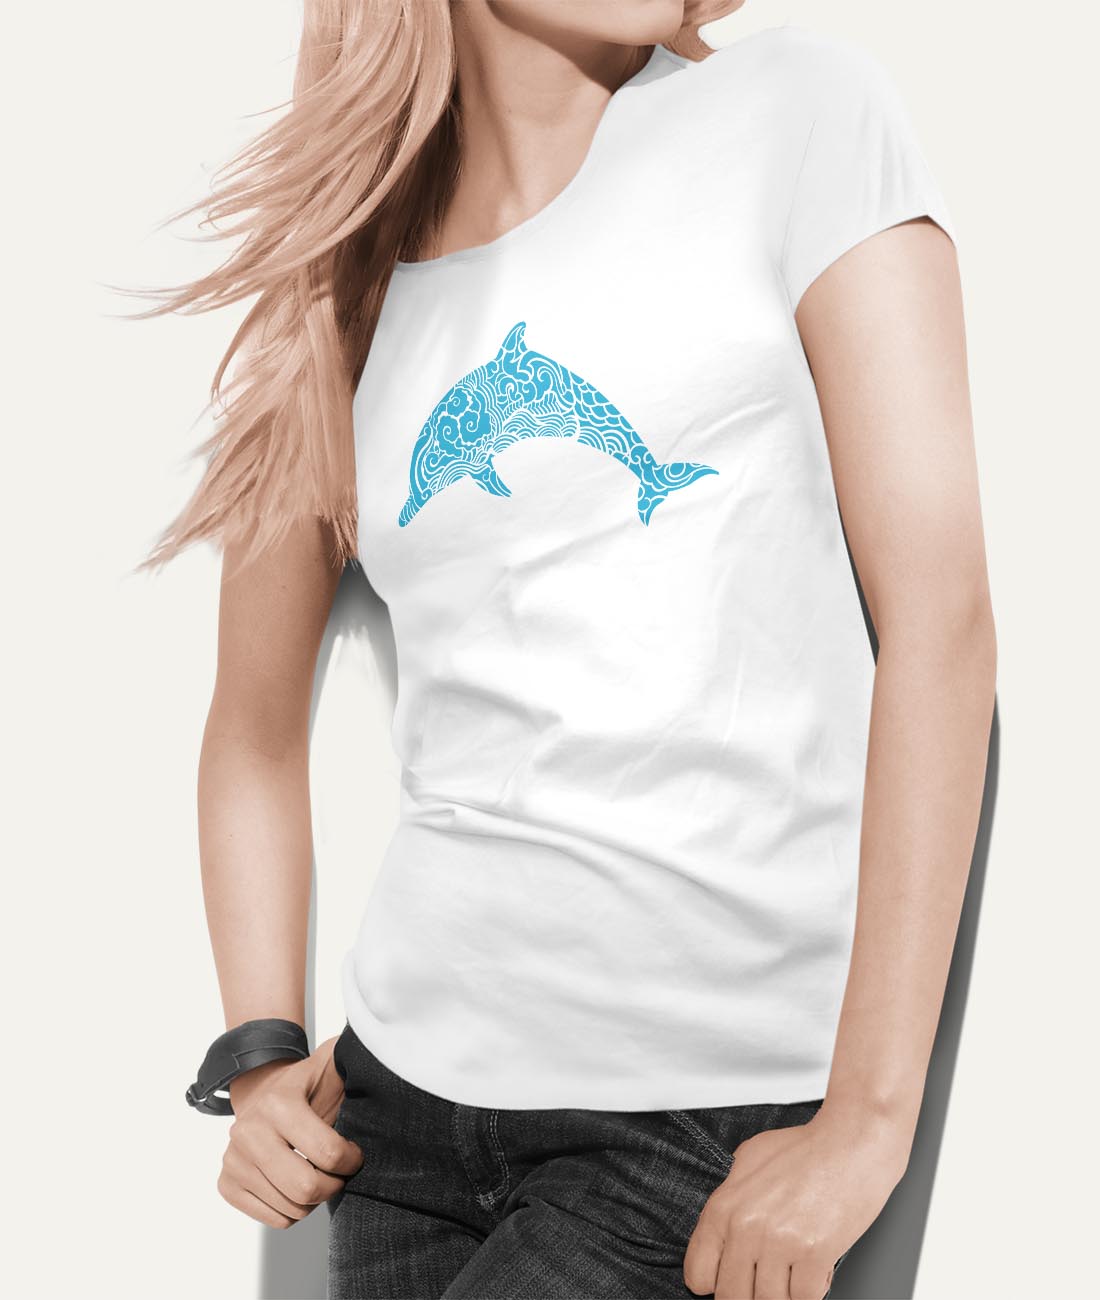 Tričko so vzorom delfína